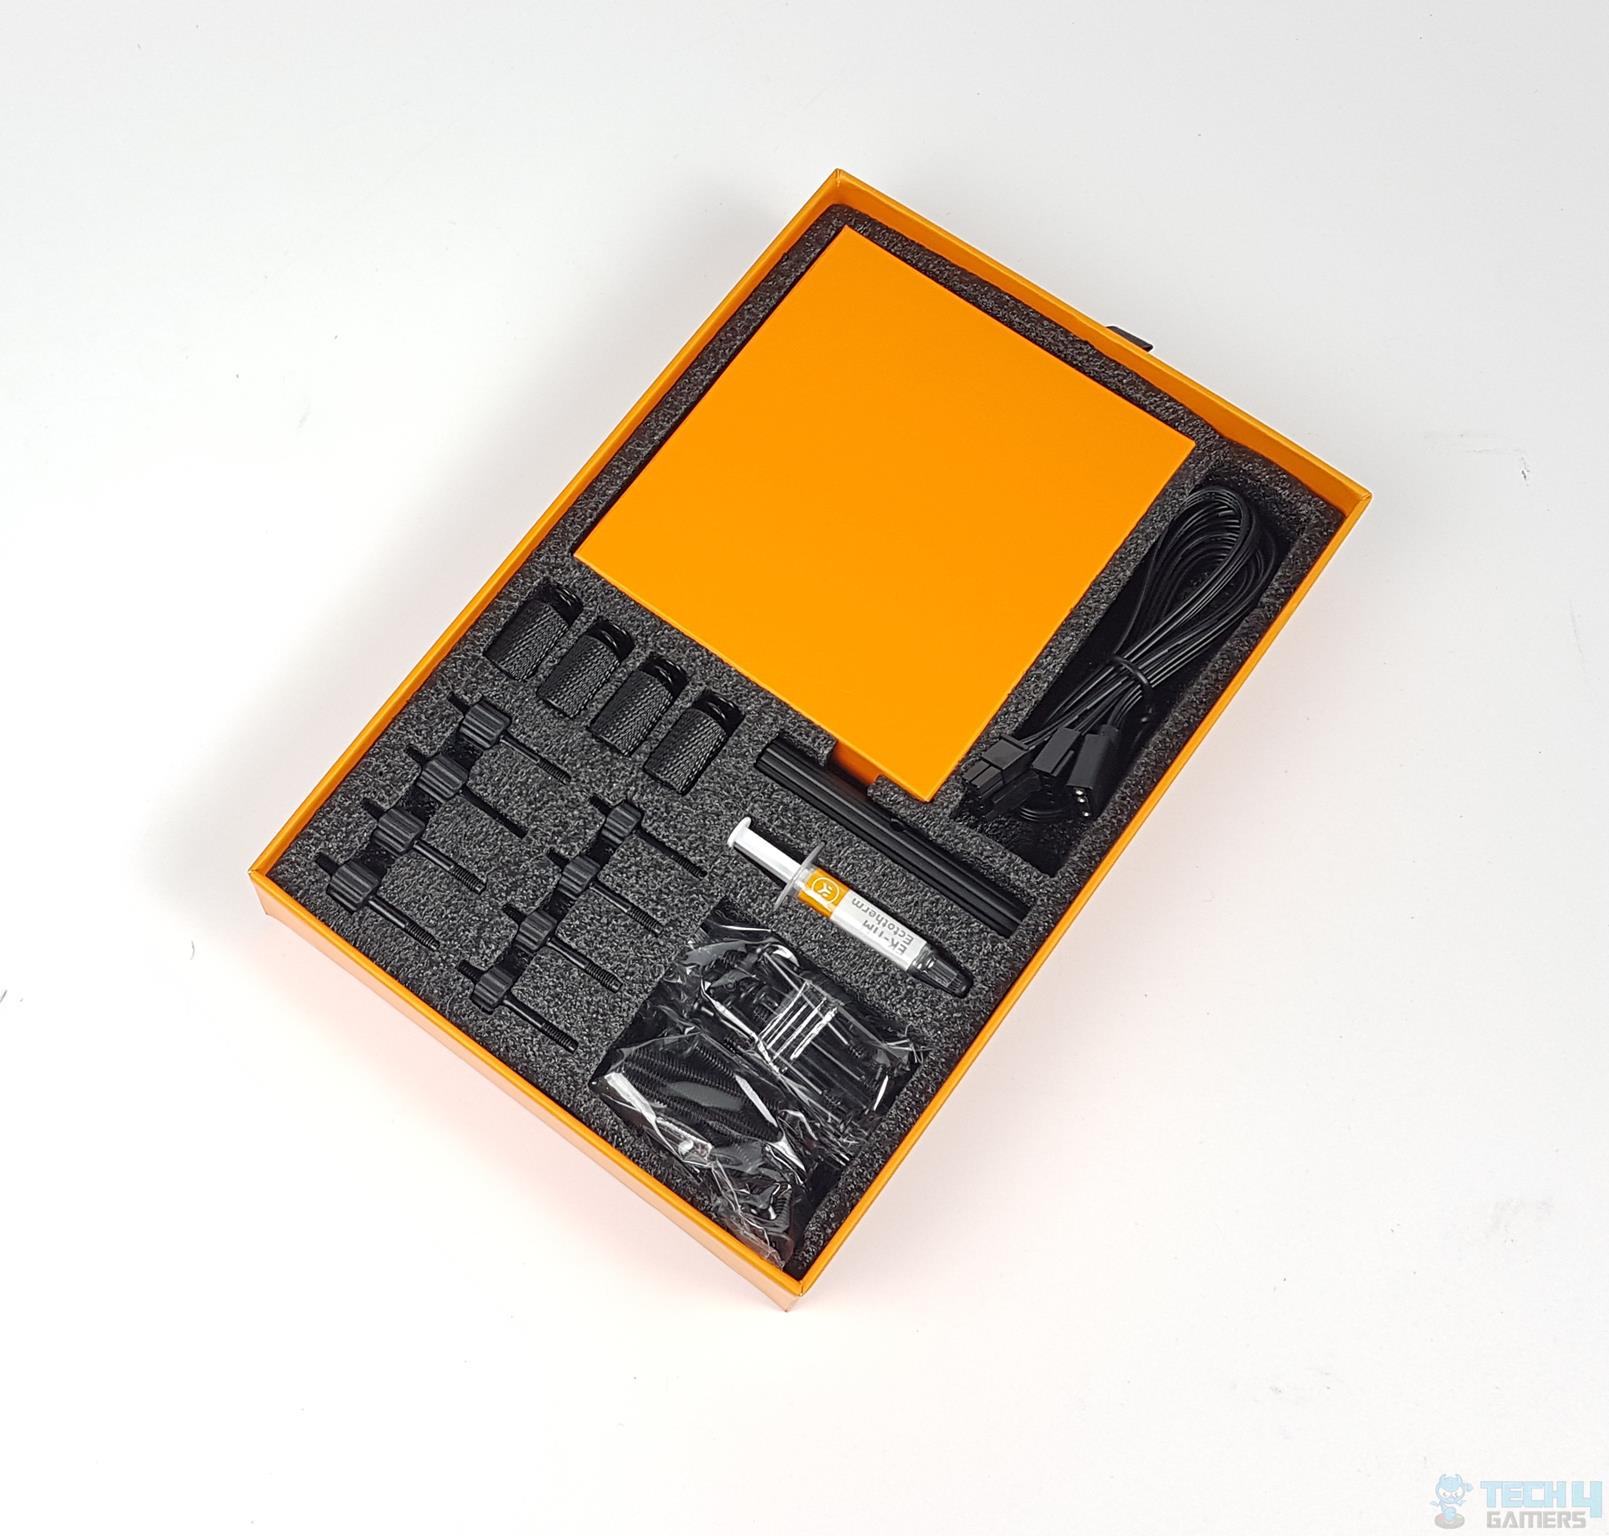 EK-Nucleus AIO CR360 LUX D-RGB — Unboxing Accessories